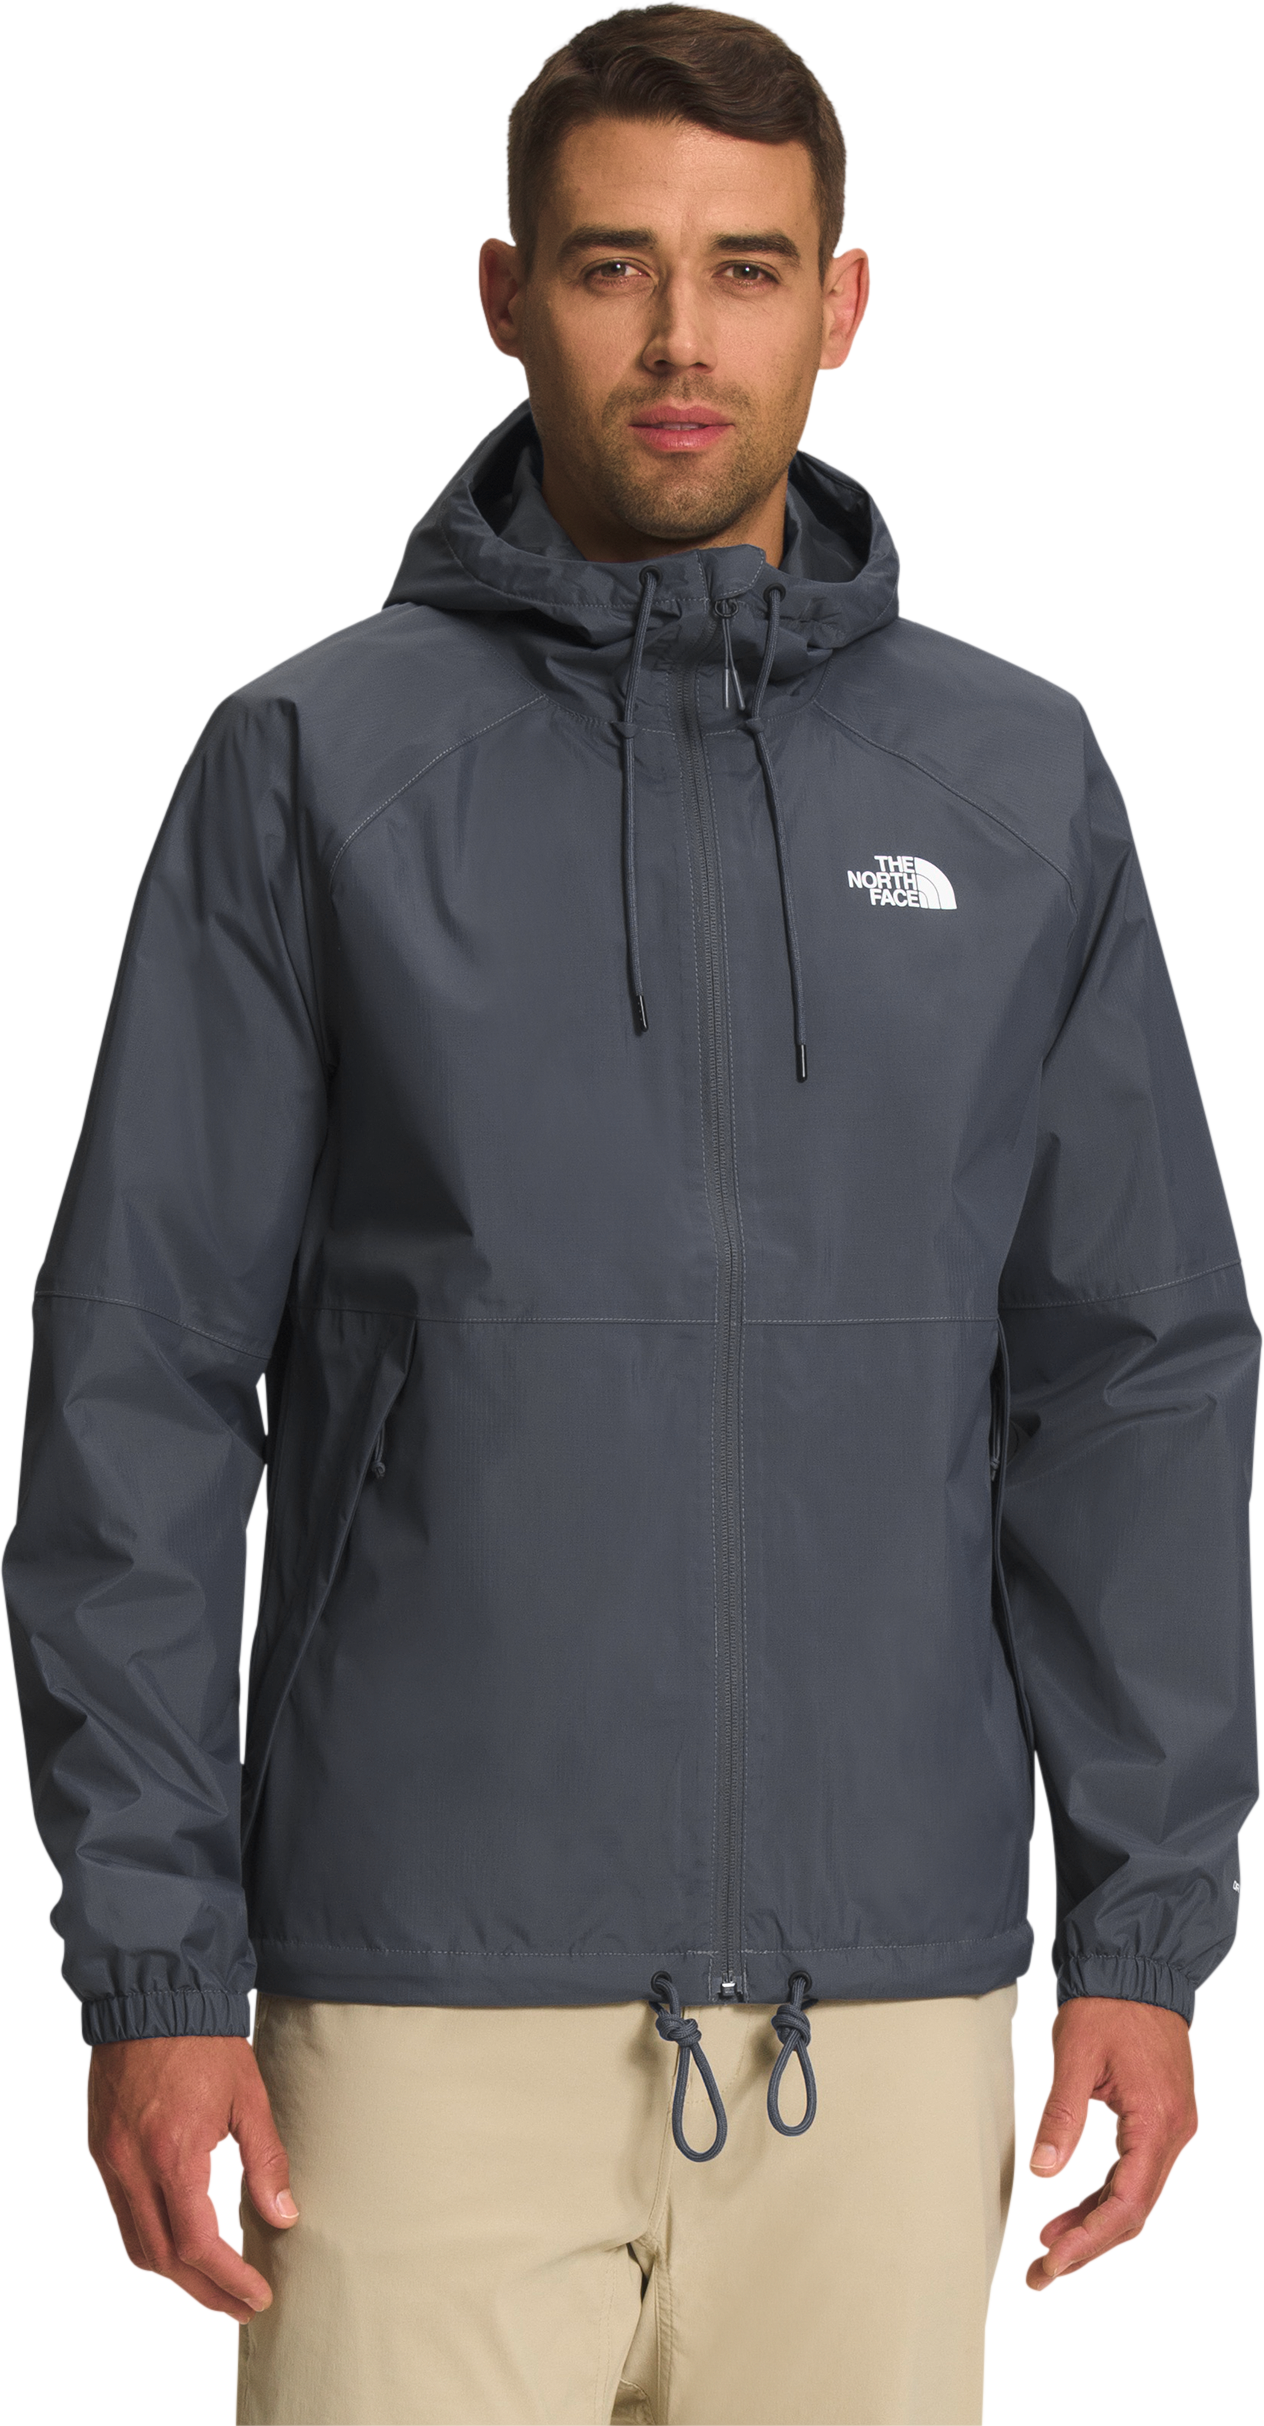 The North Face Antora Rain Full-Zip Long-Sleeve Hoodie for Men - Vandis Grey - M